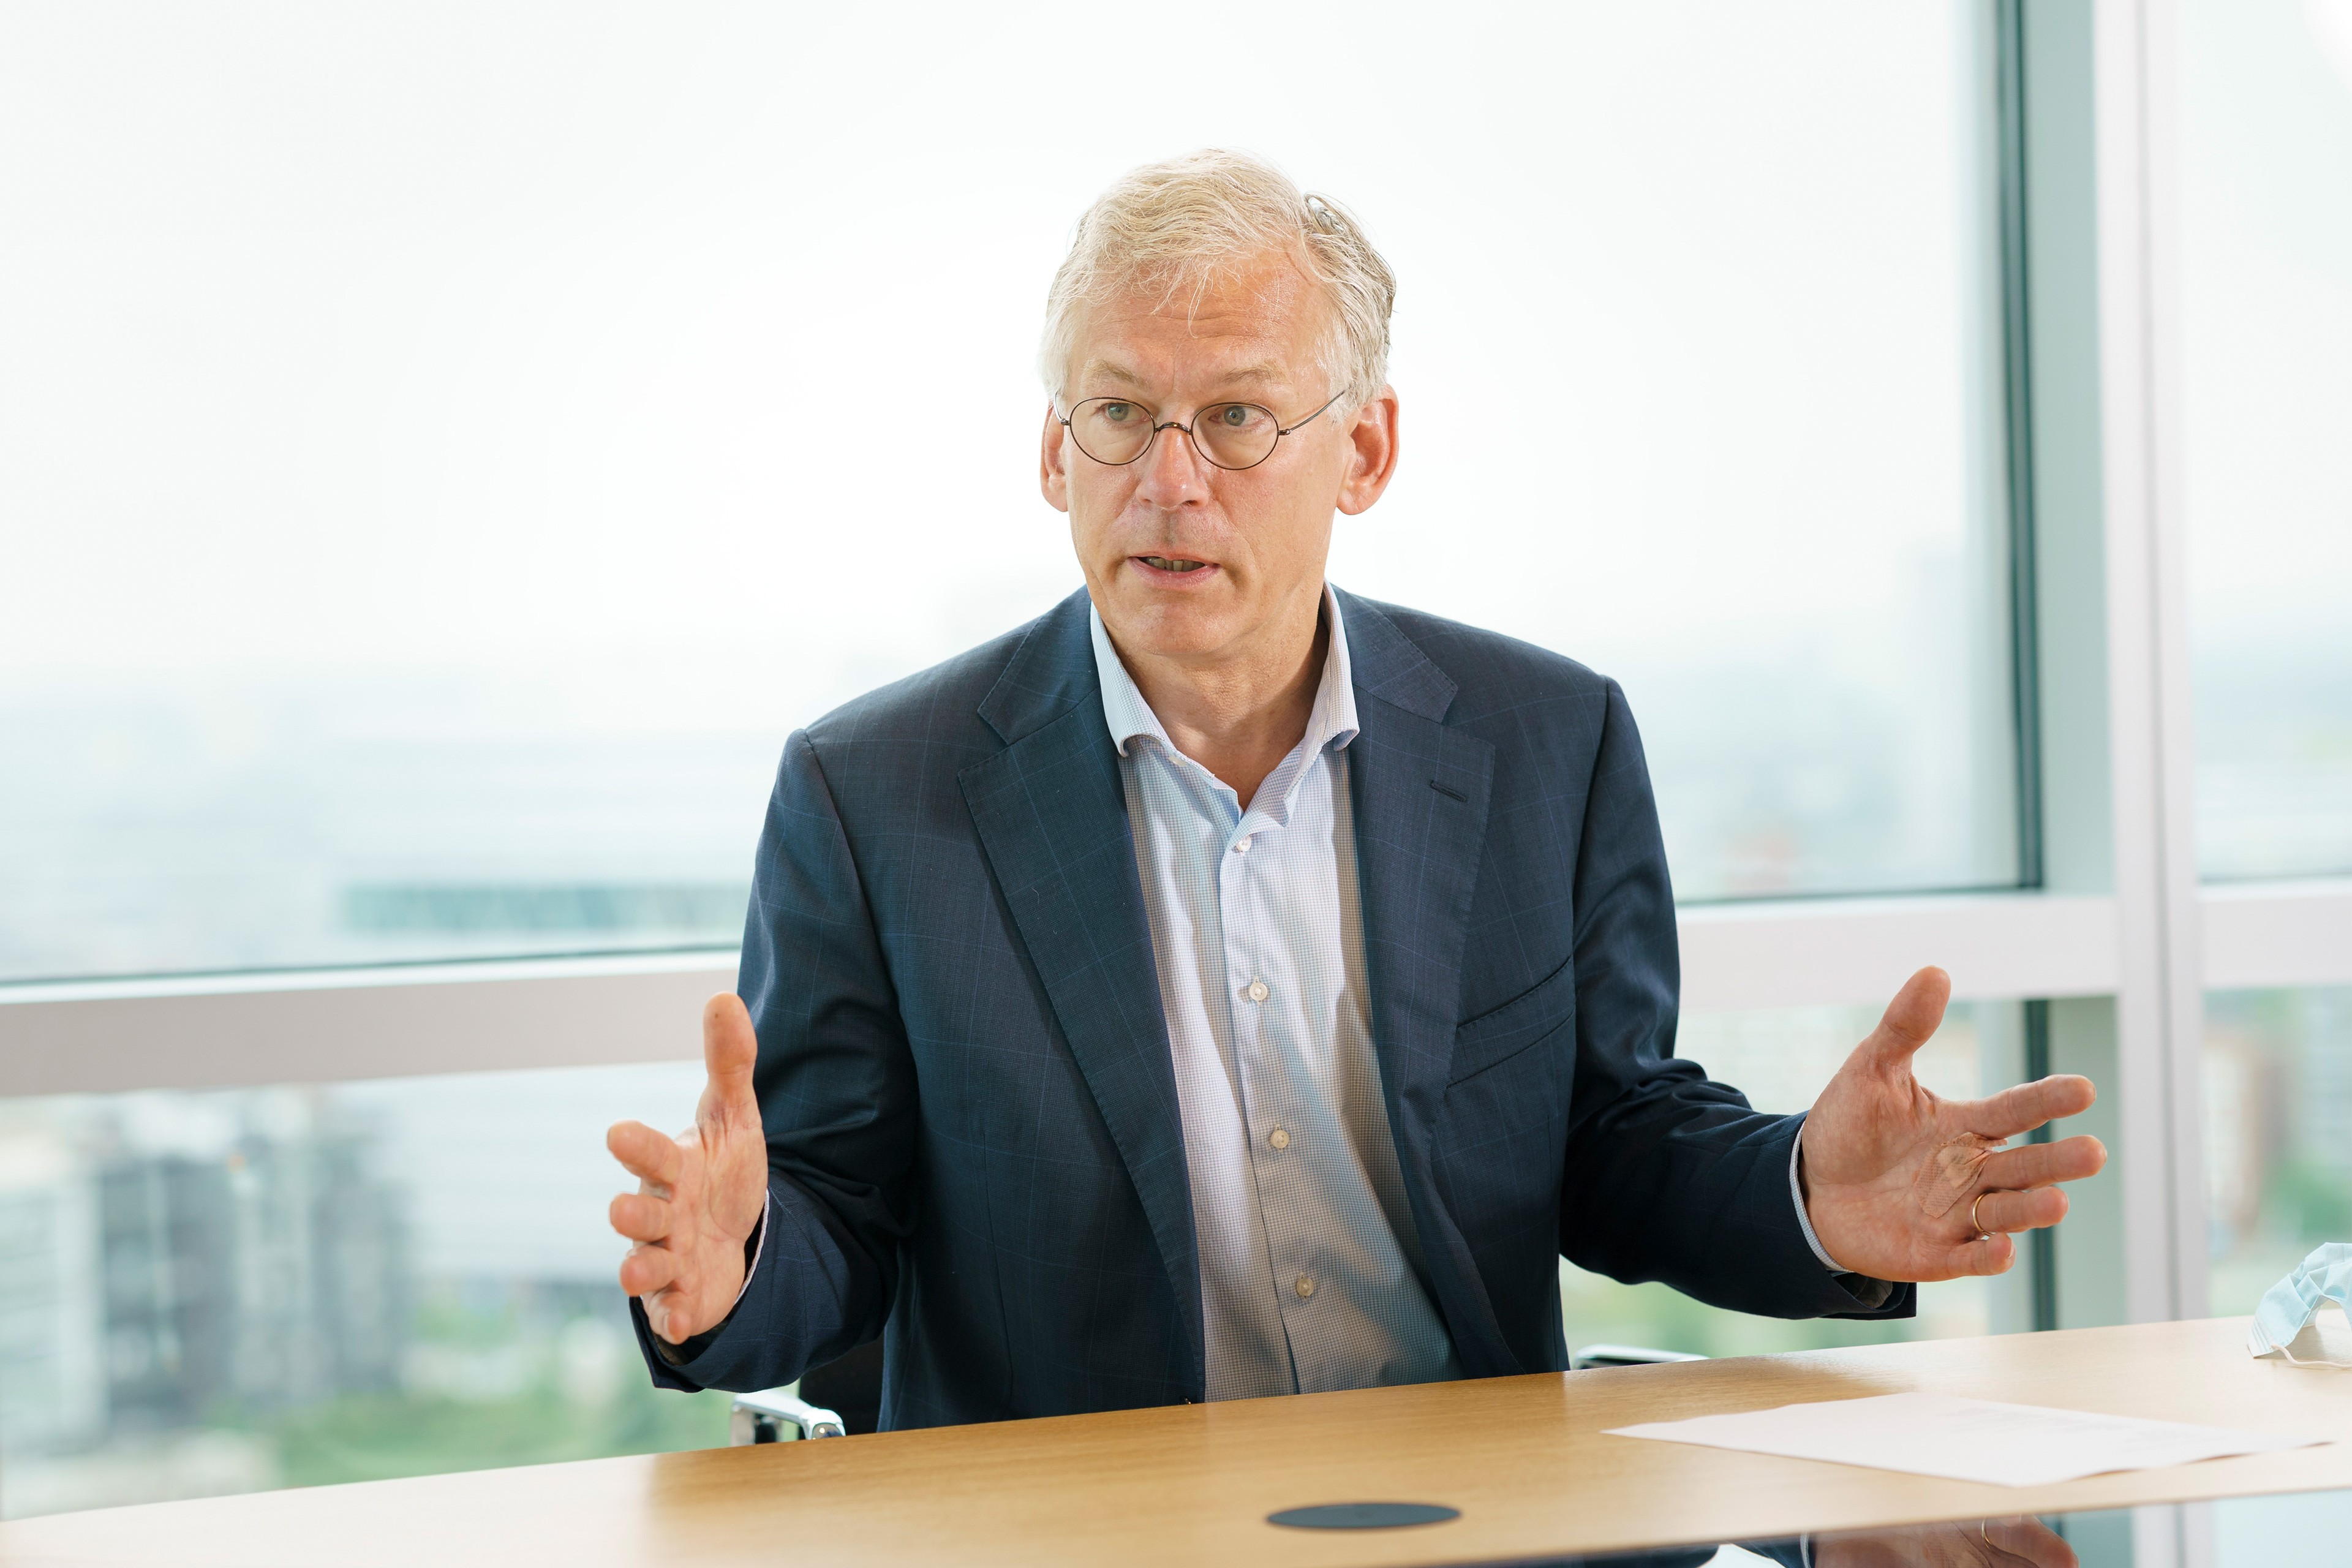 Frans van Houten, CEO van Philips